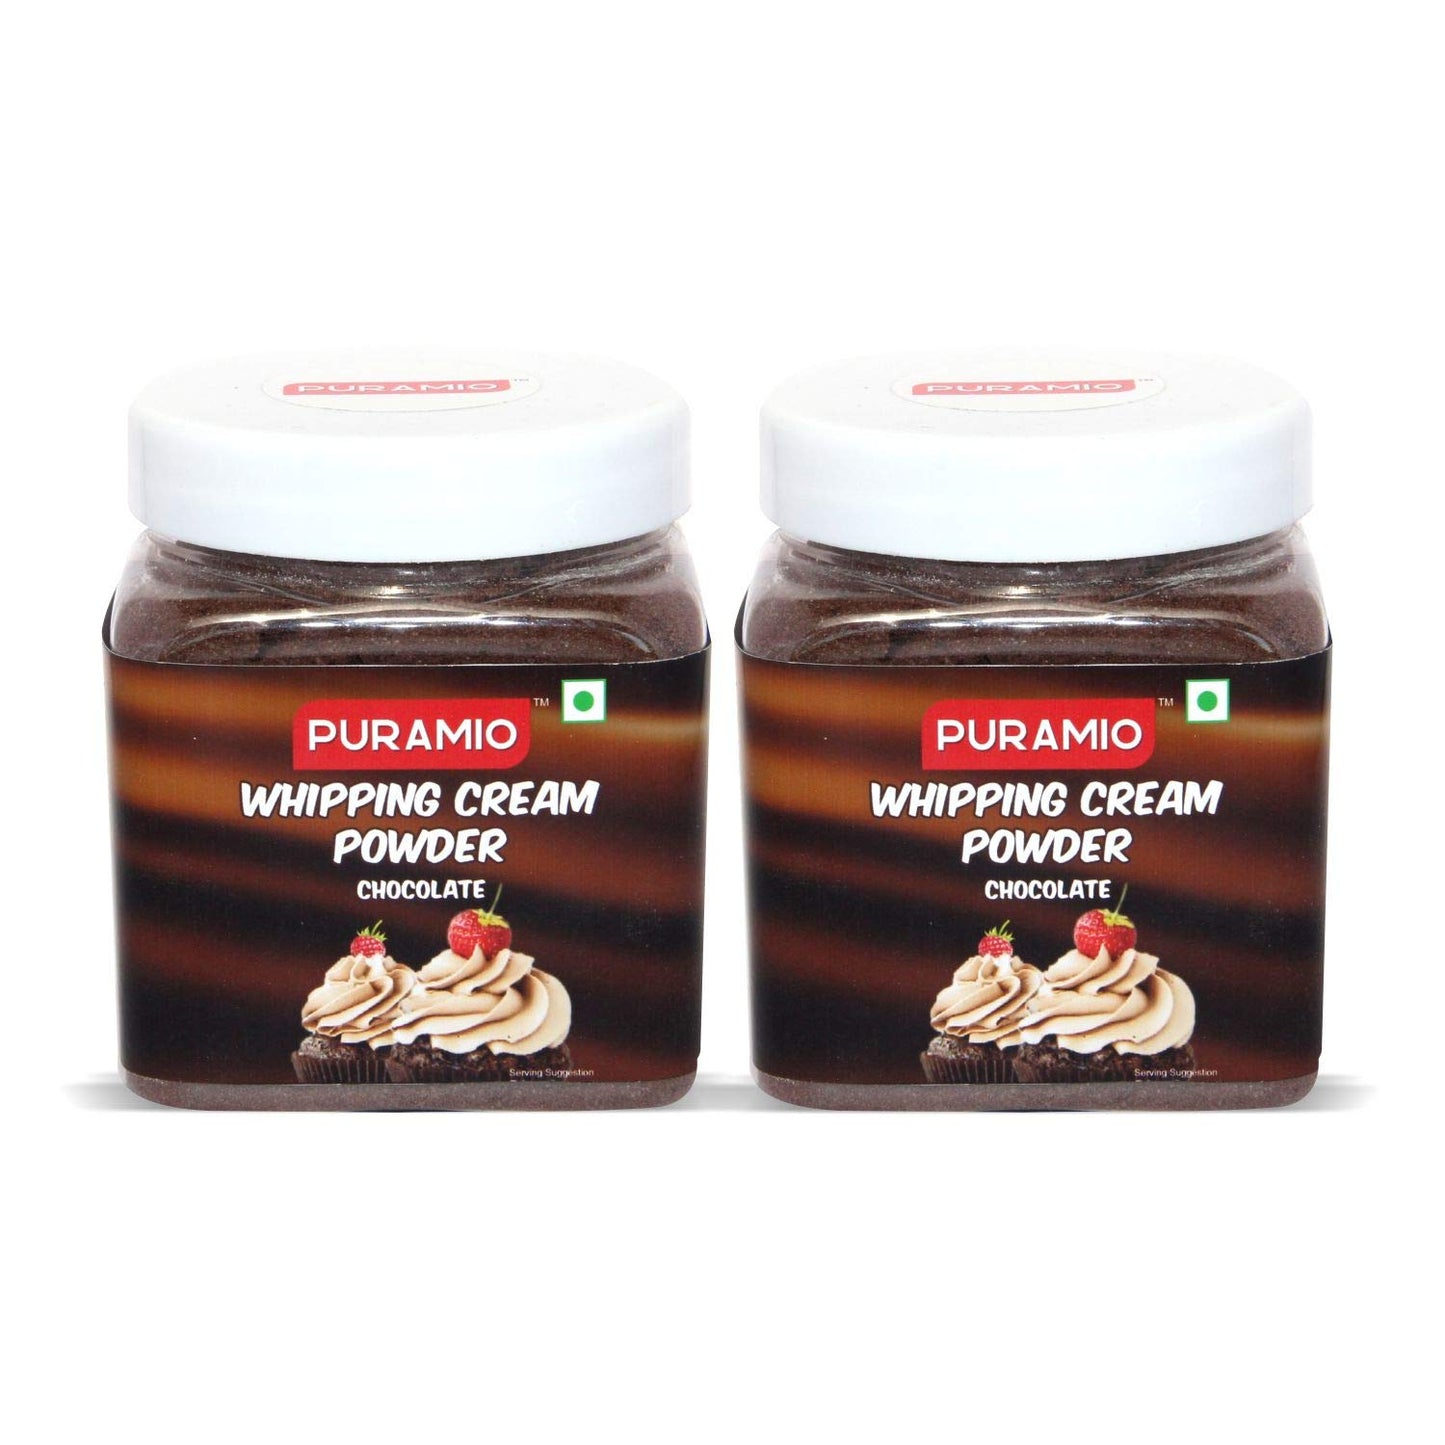 Puramio Whipping Cream Powder (Chocolate) - (250g) (Pack of 2)